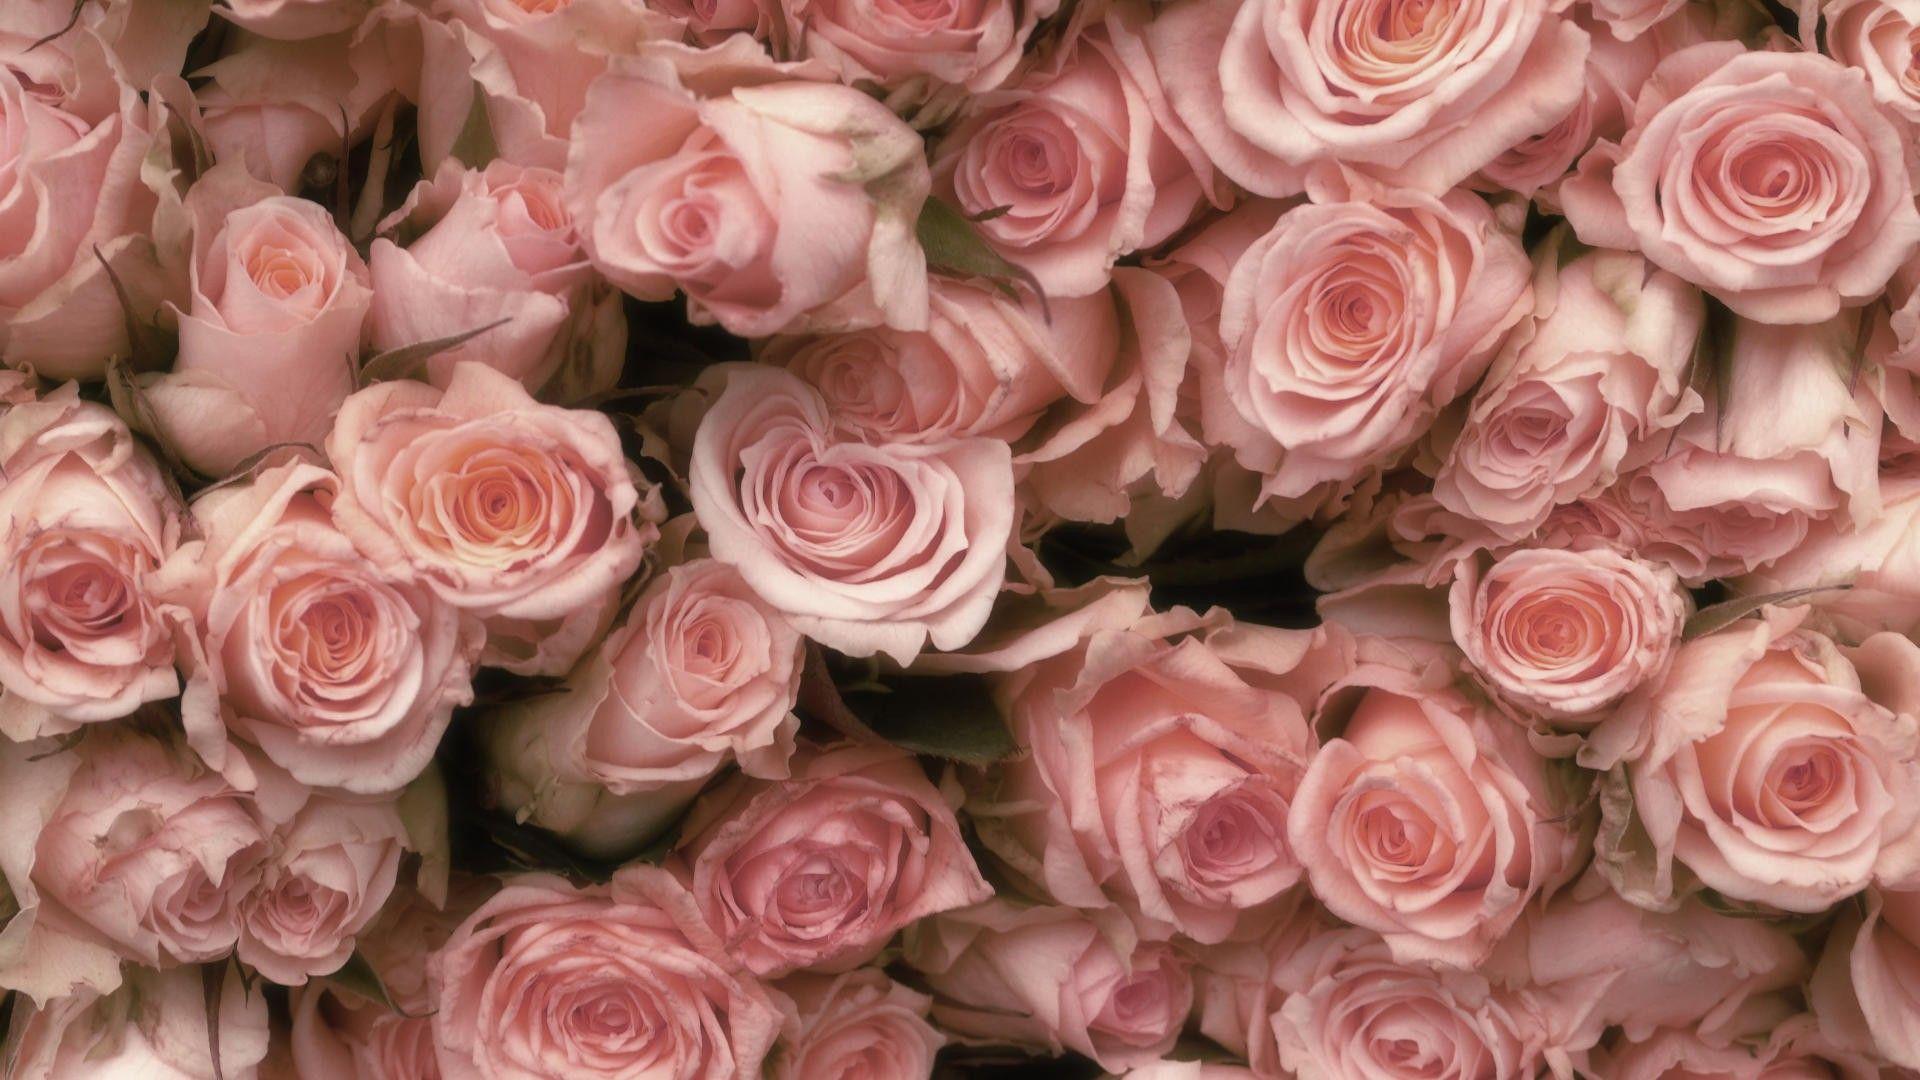 Light Pink Roses Wallpaper. Rose wallpaper, Flower